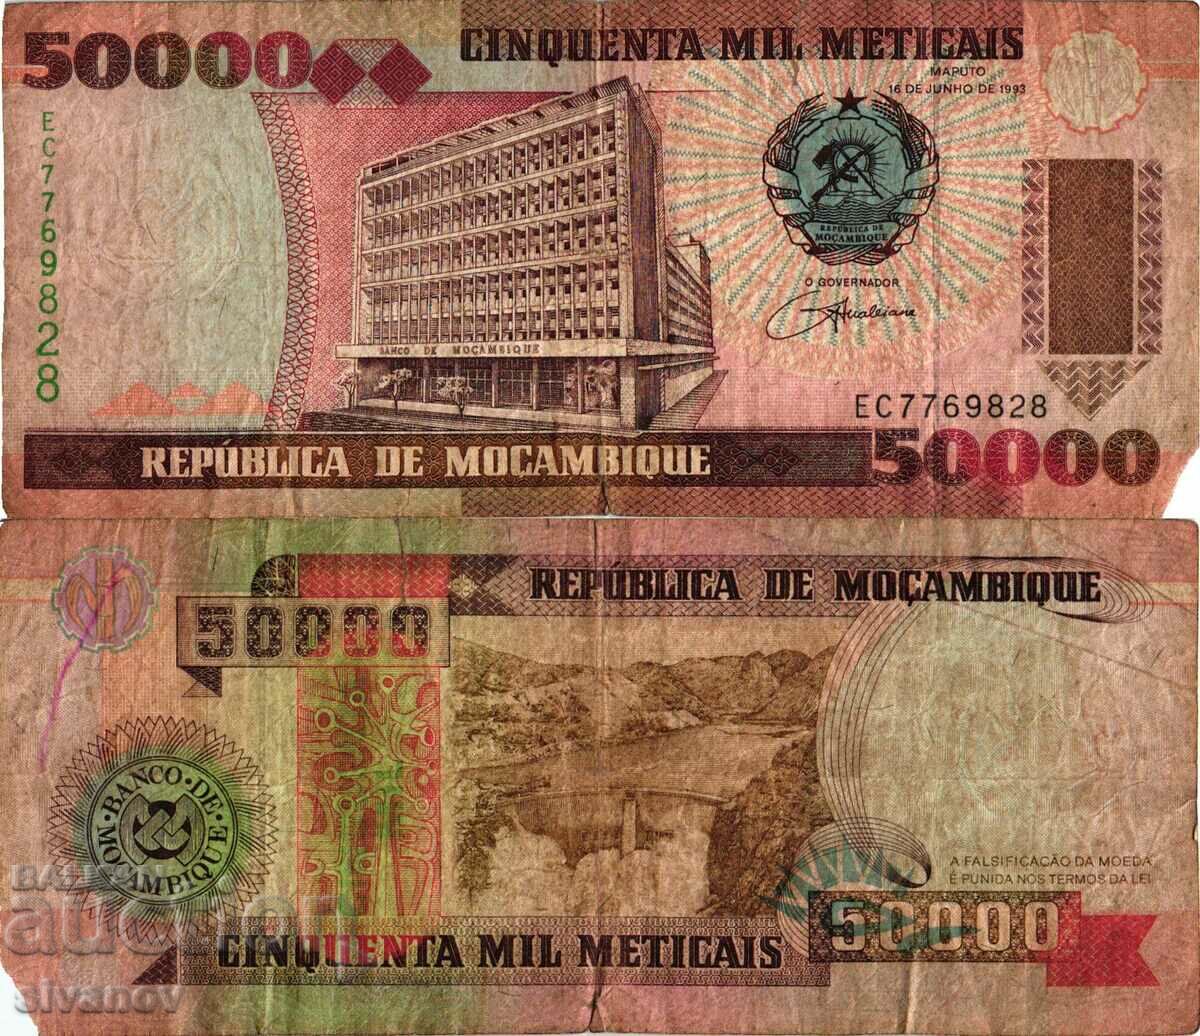 Mozambic 50000 Meticais 1993 #4196